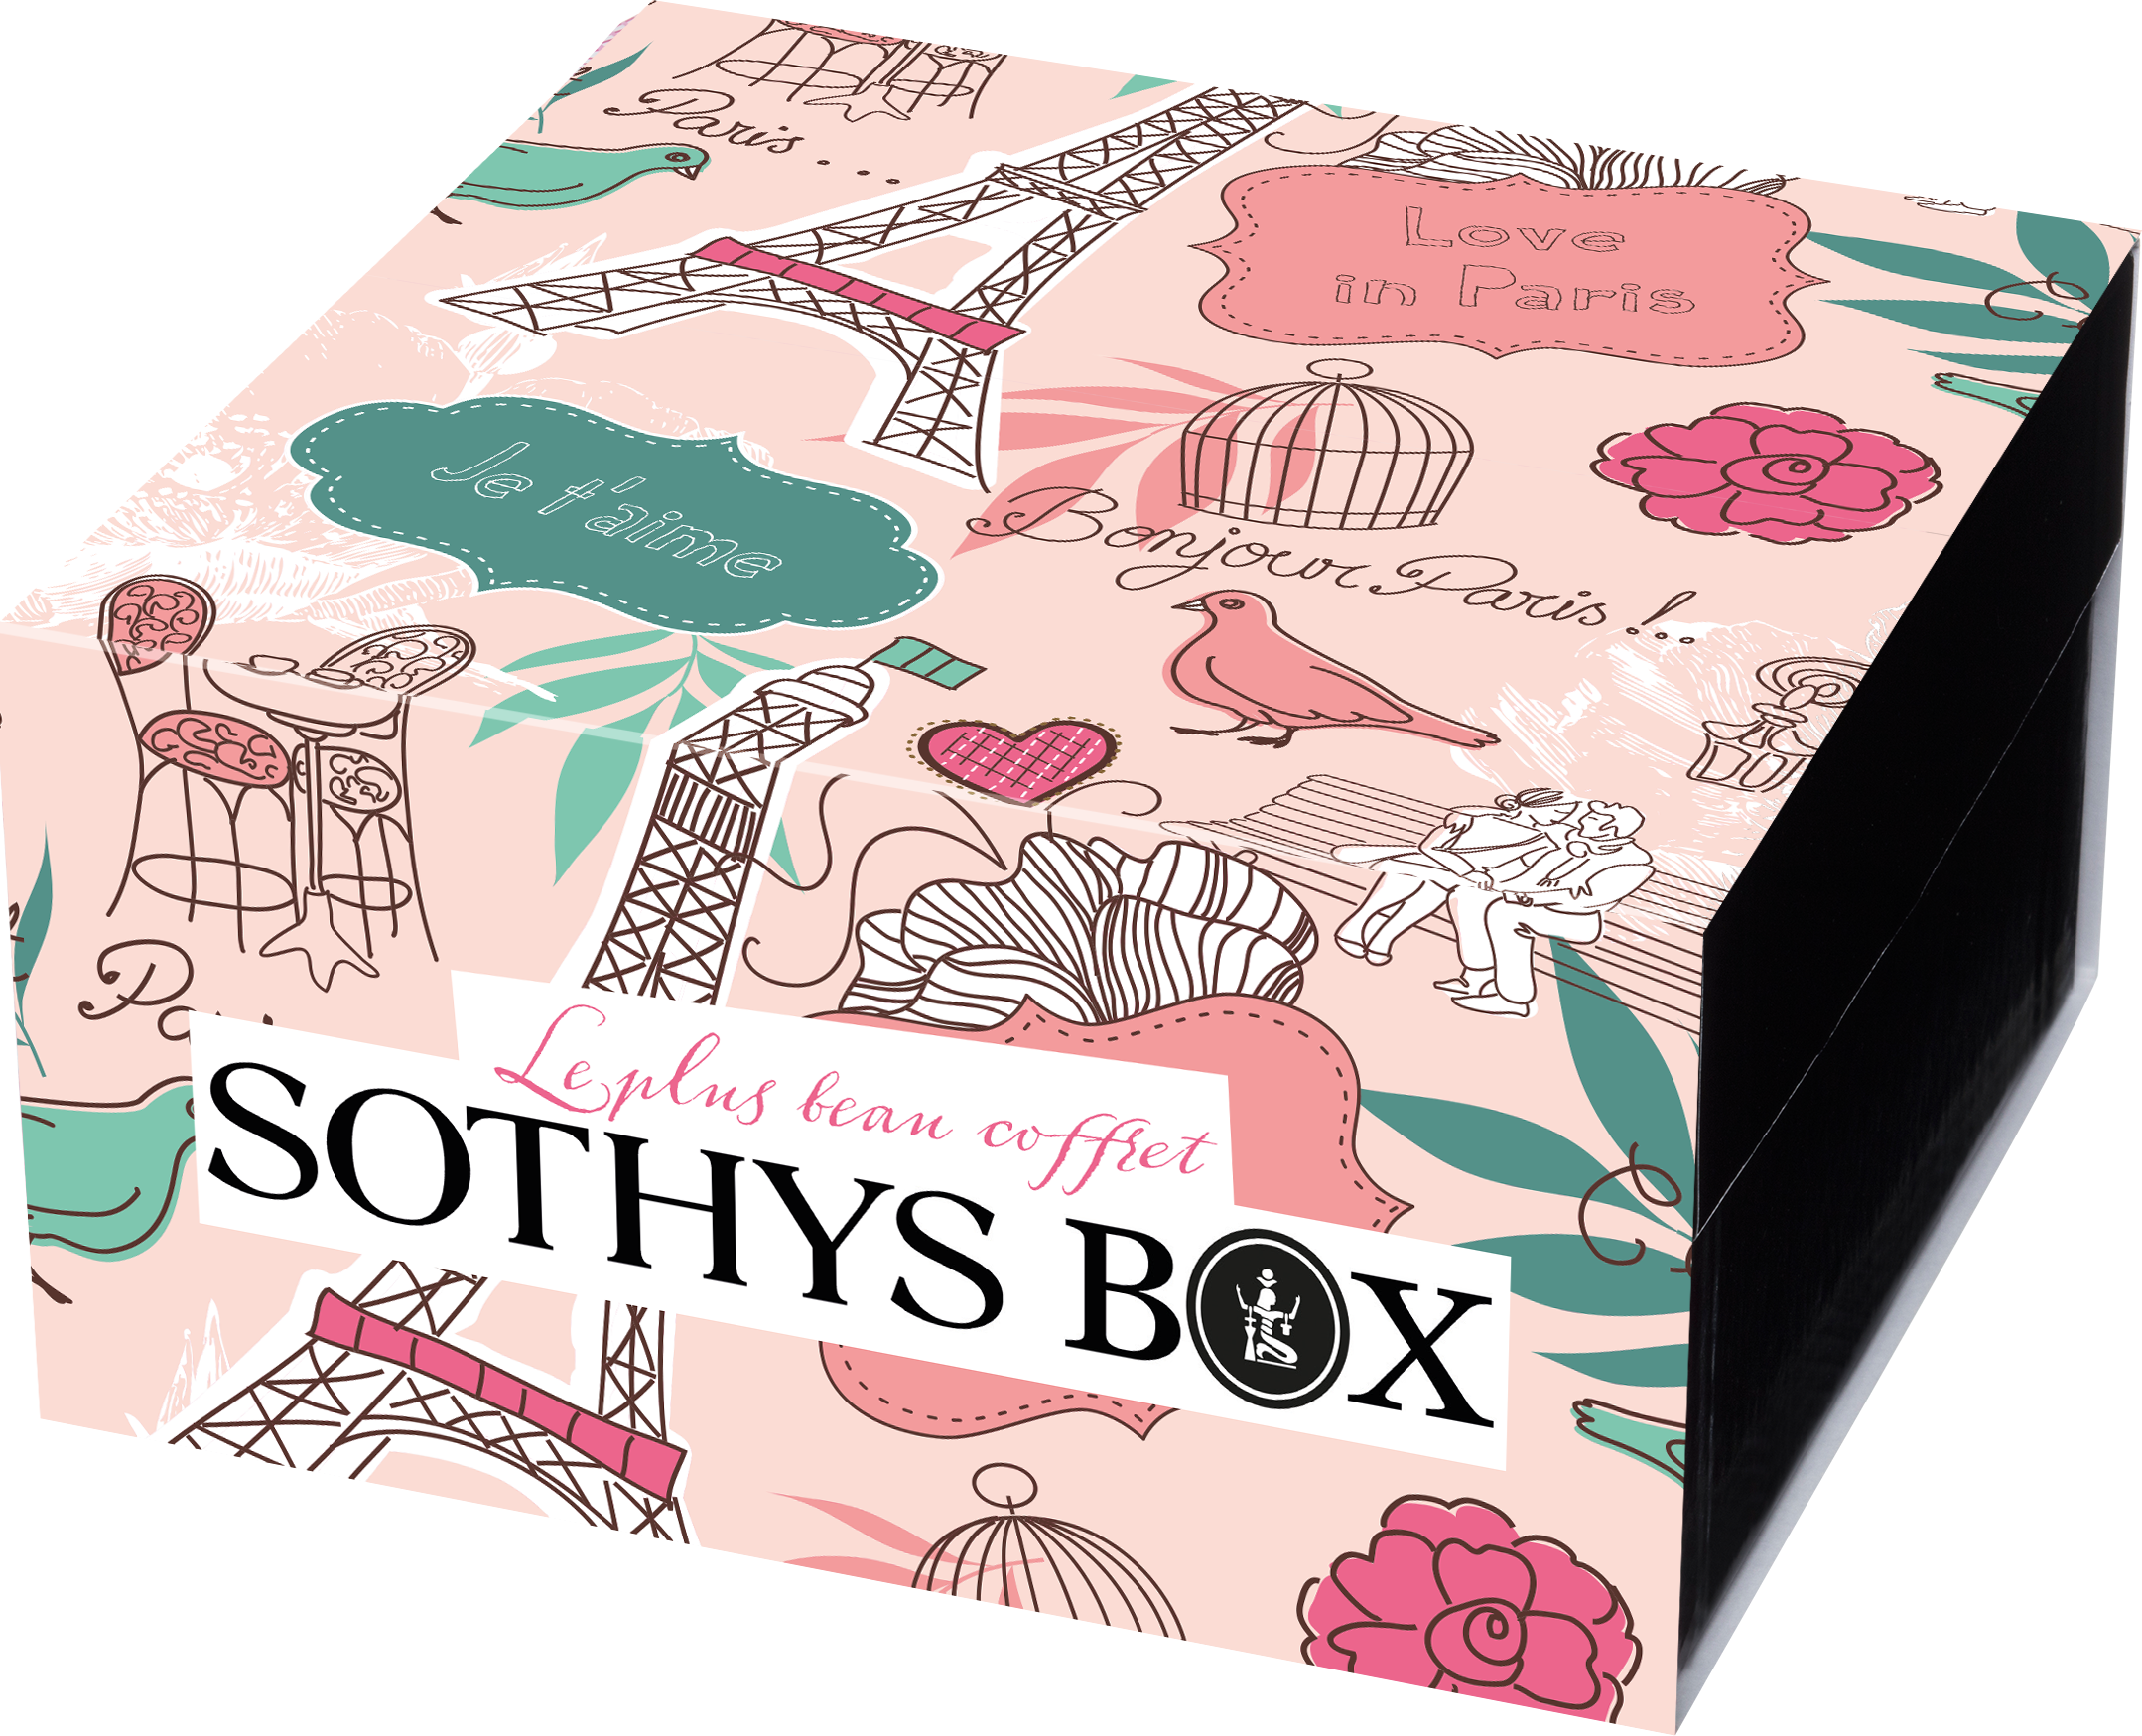 SOTHYS Box als Geschenk